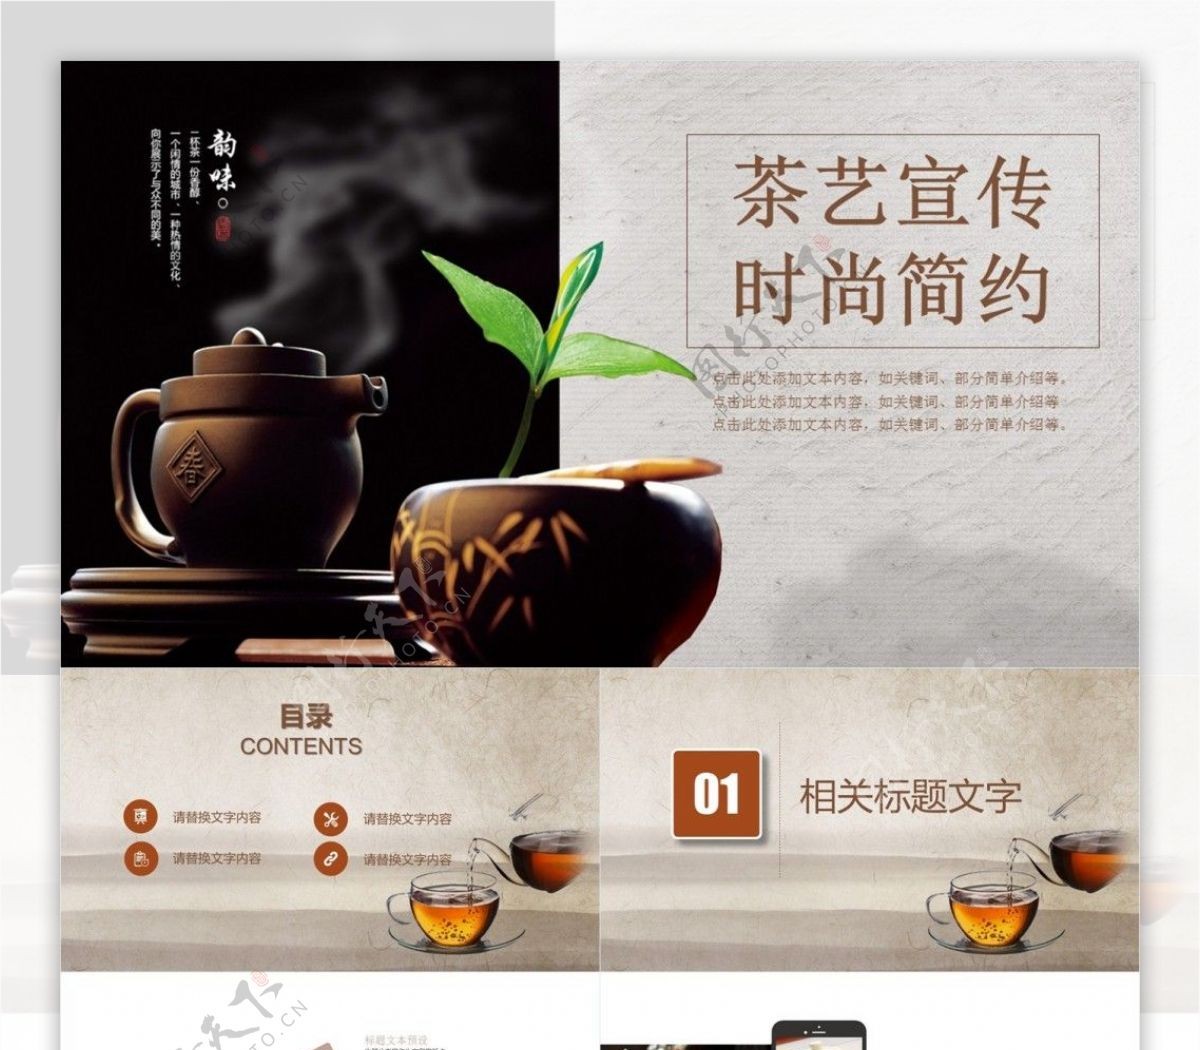 时尚简约茶艺产品宣传推广PPT模板